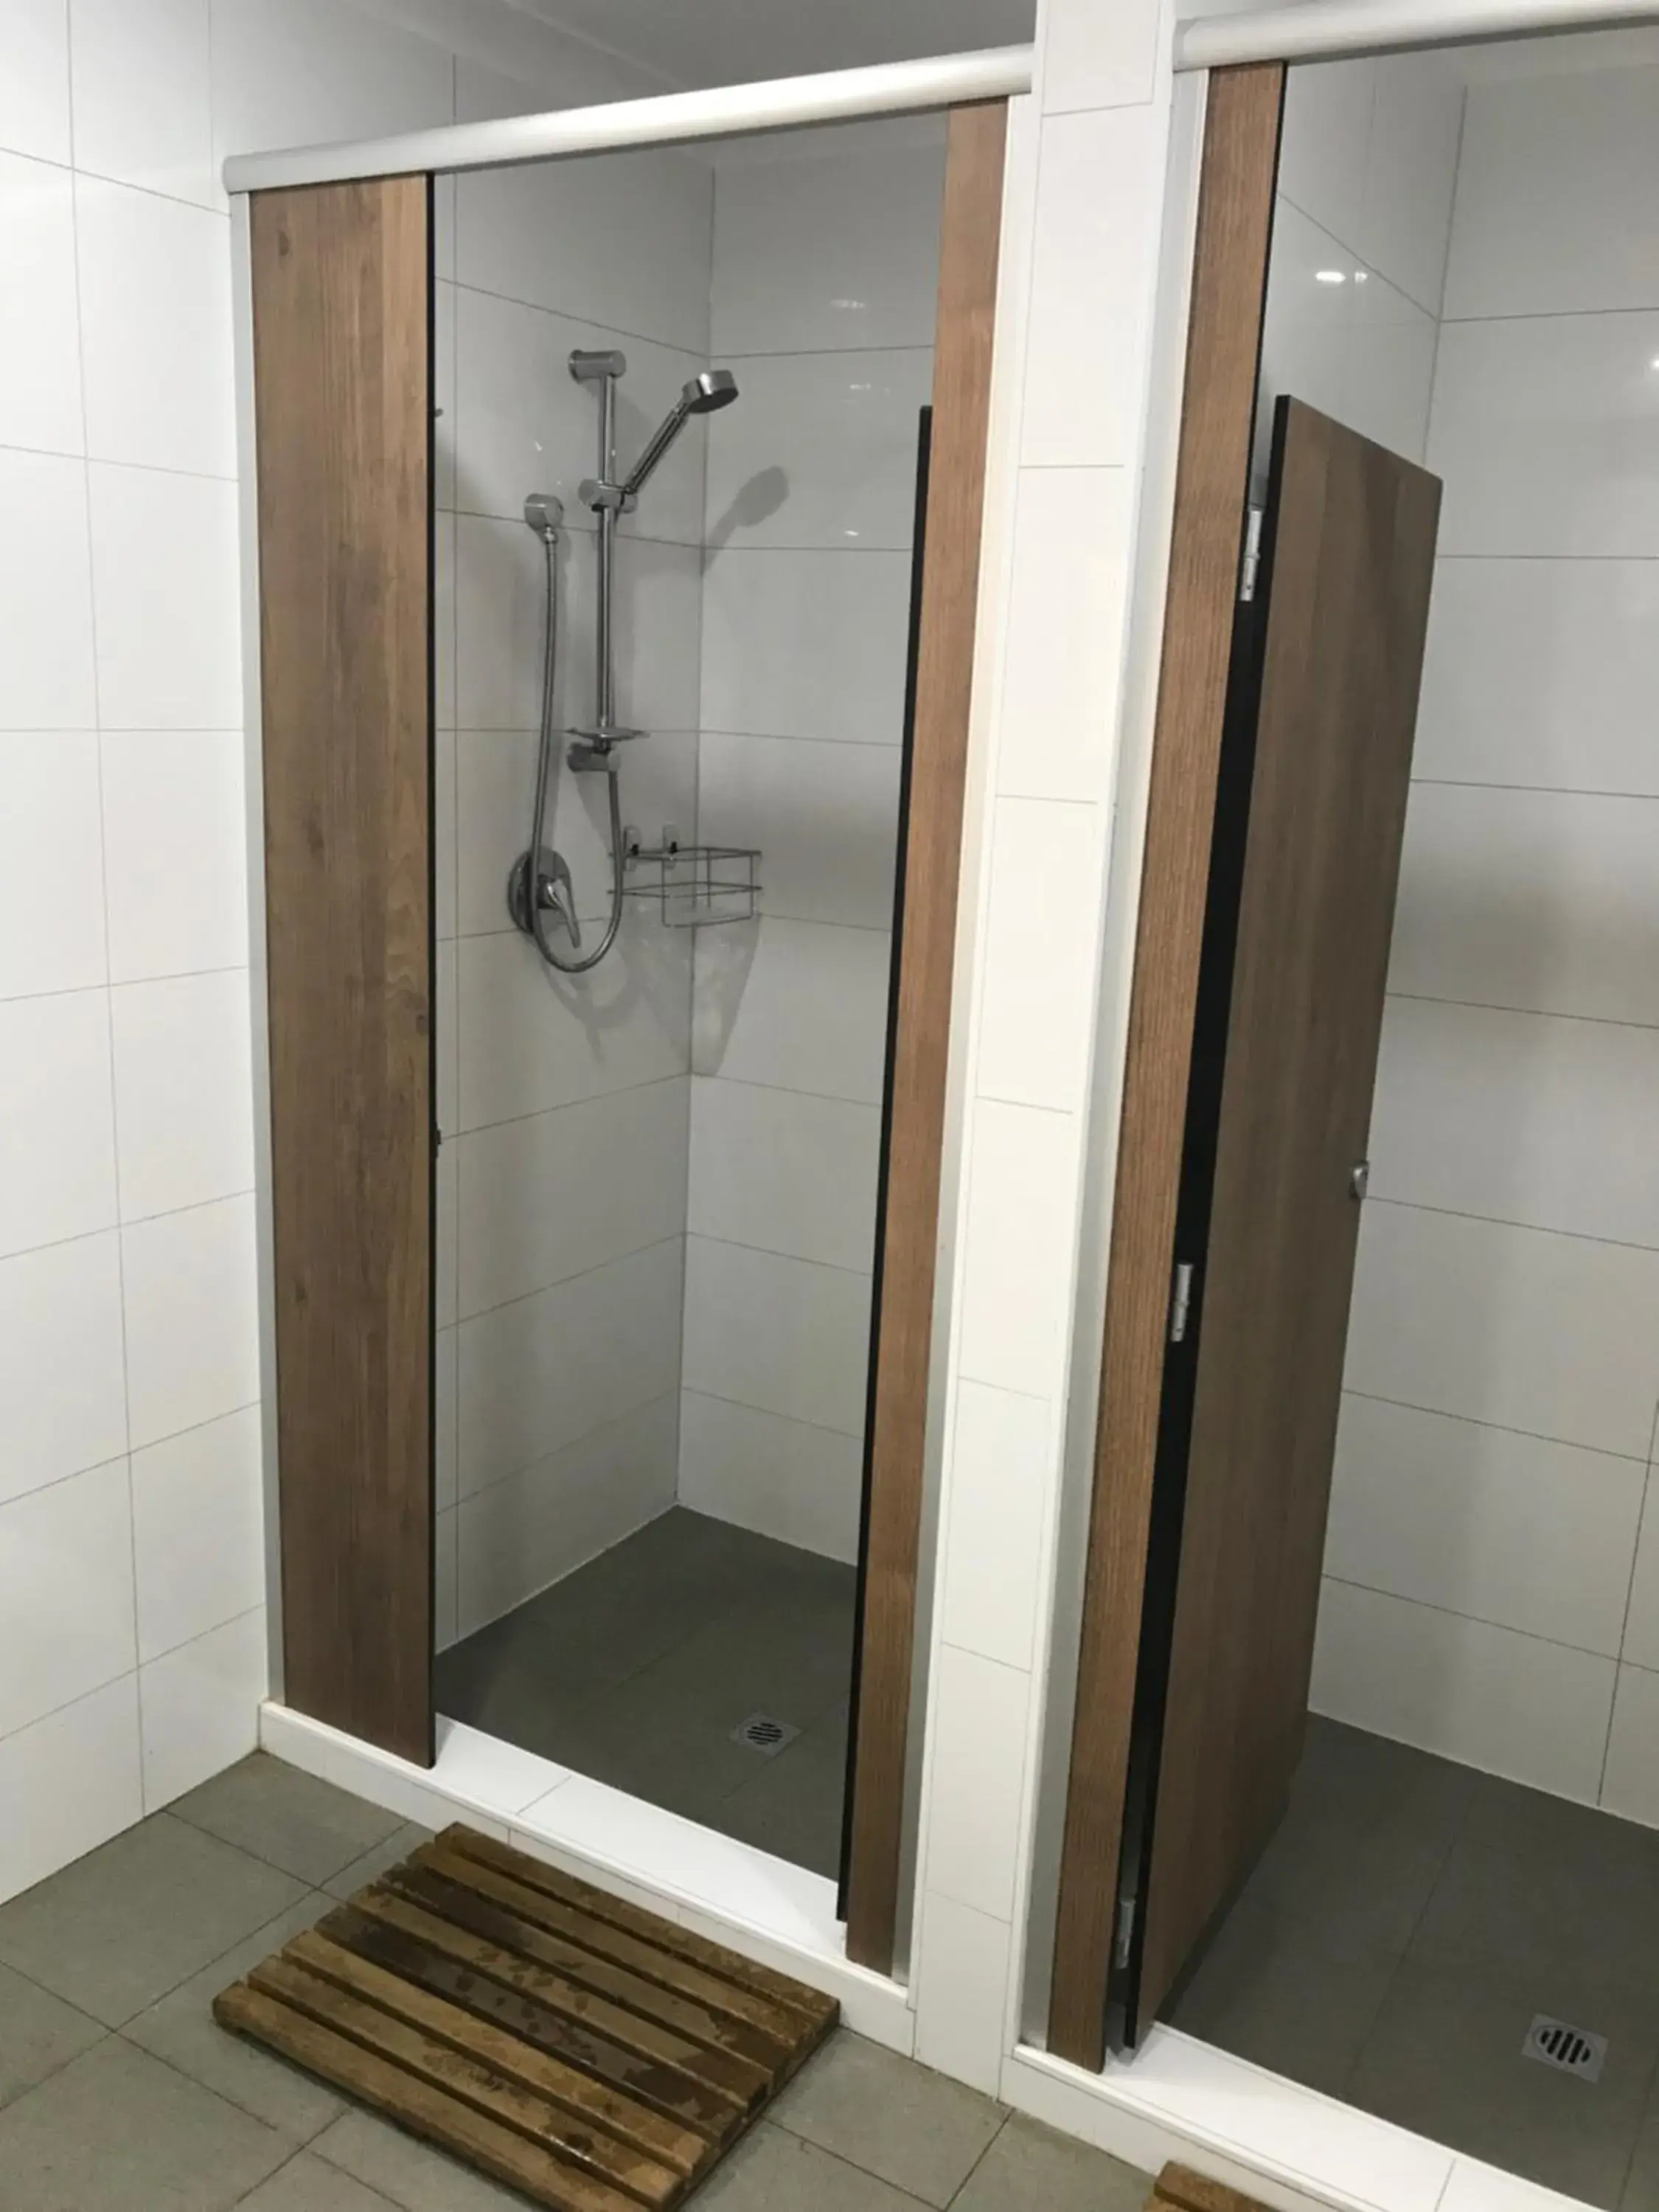 Shower, Bathroom in Hay Street Traveller's Inn